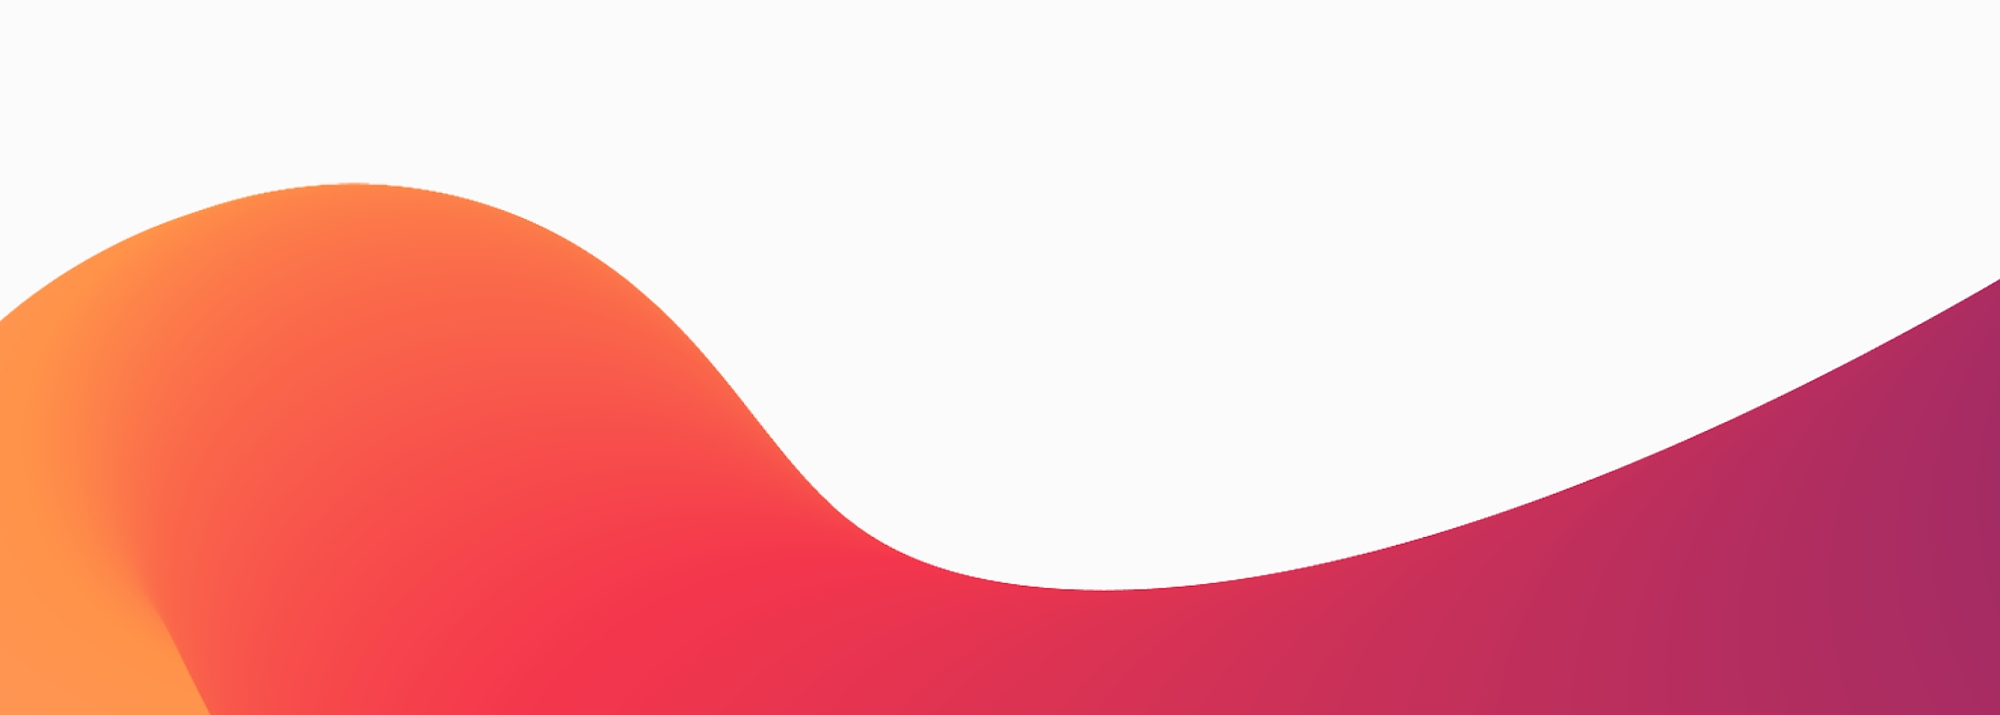 Abstrakti ulkoasu, jossa on tasainen liukuvärjätty aalto, jonka värit siirtyvät oranssista punaiseen ja violettiin 